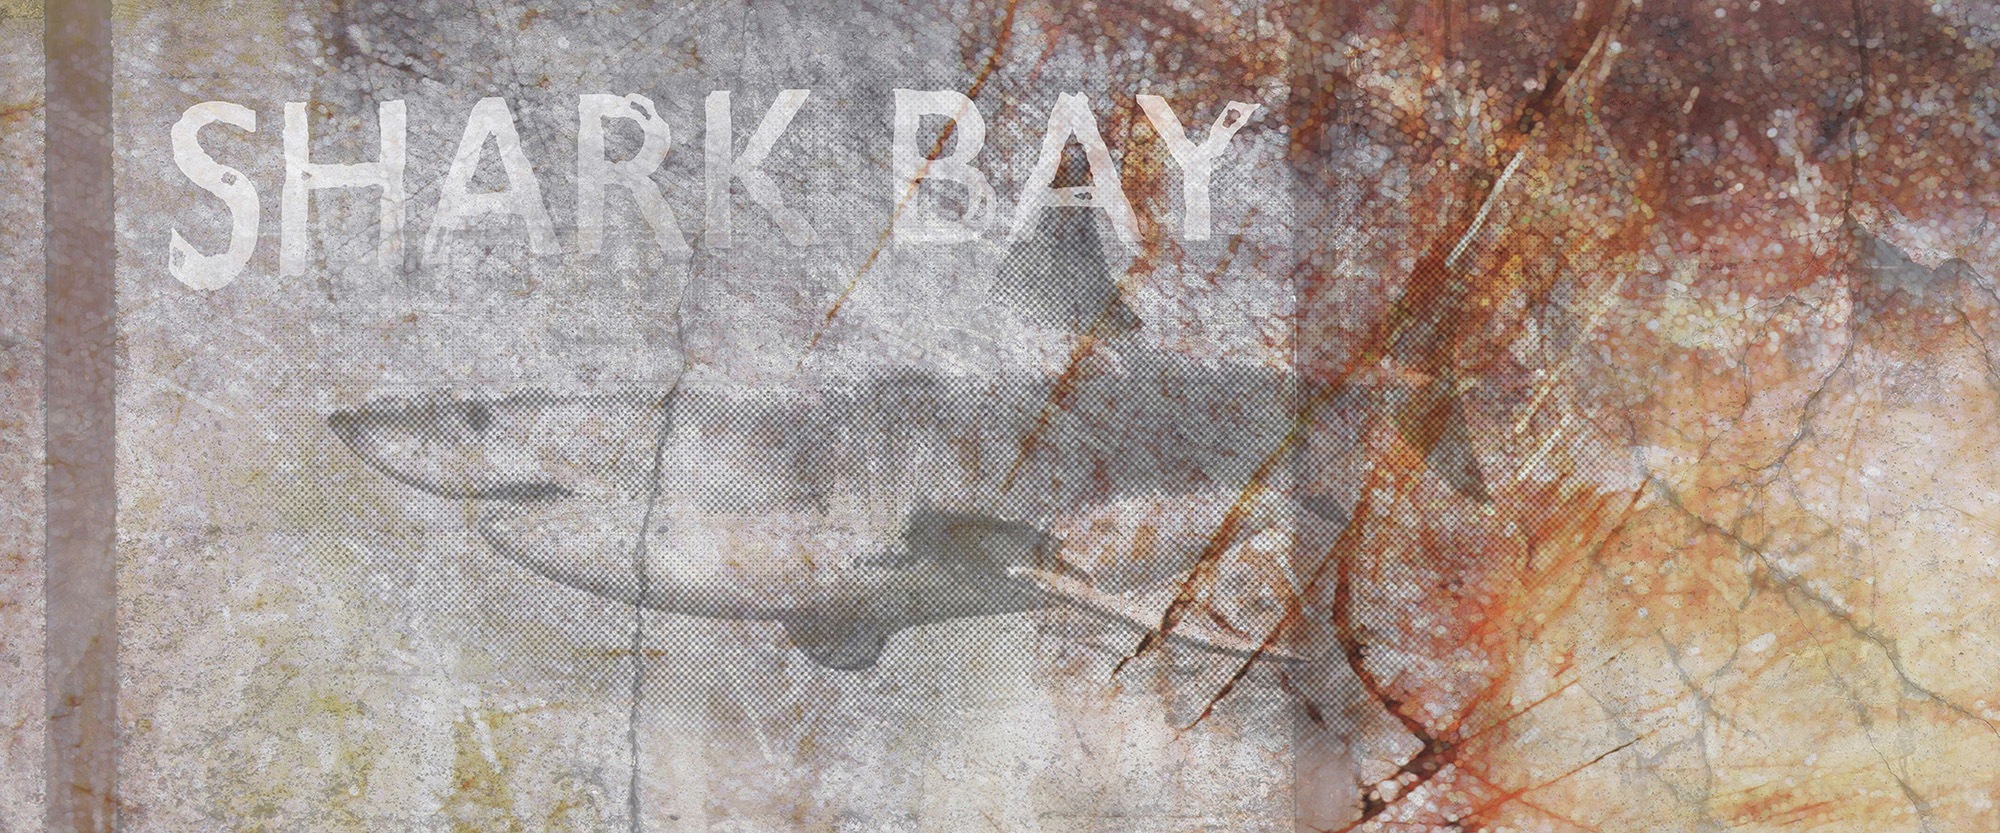 Fototapete »Shark Bay«, Vlies, Wand, Schräge